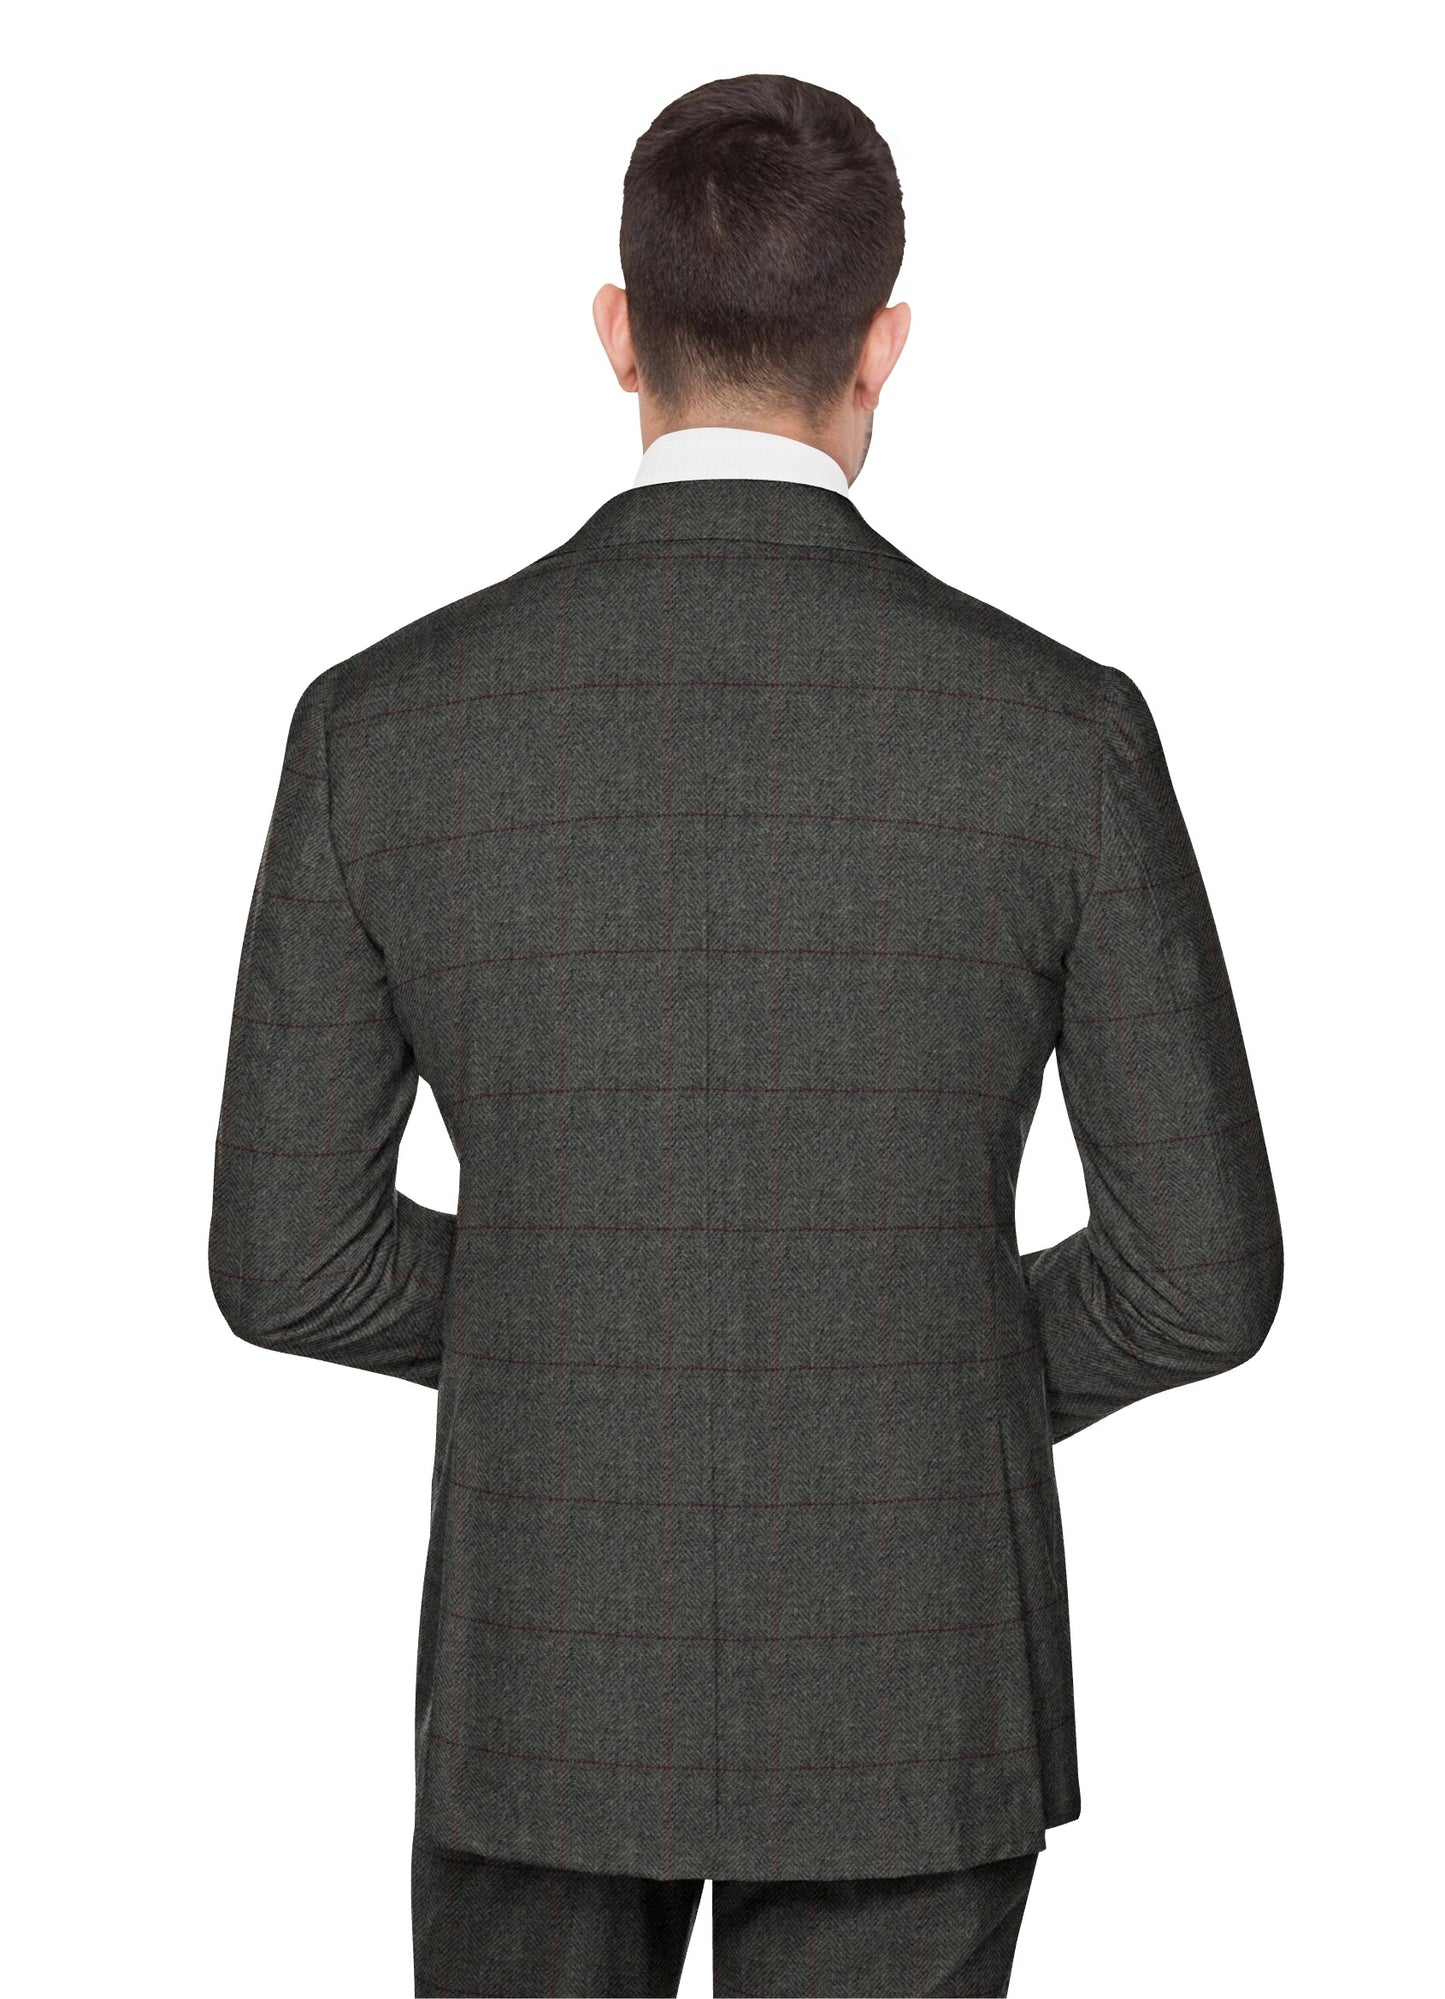 British Classic Grey Herringbone Plaid Tweed Suit